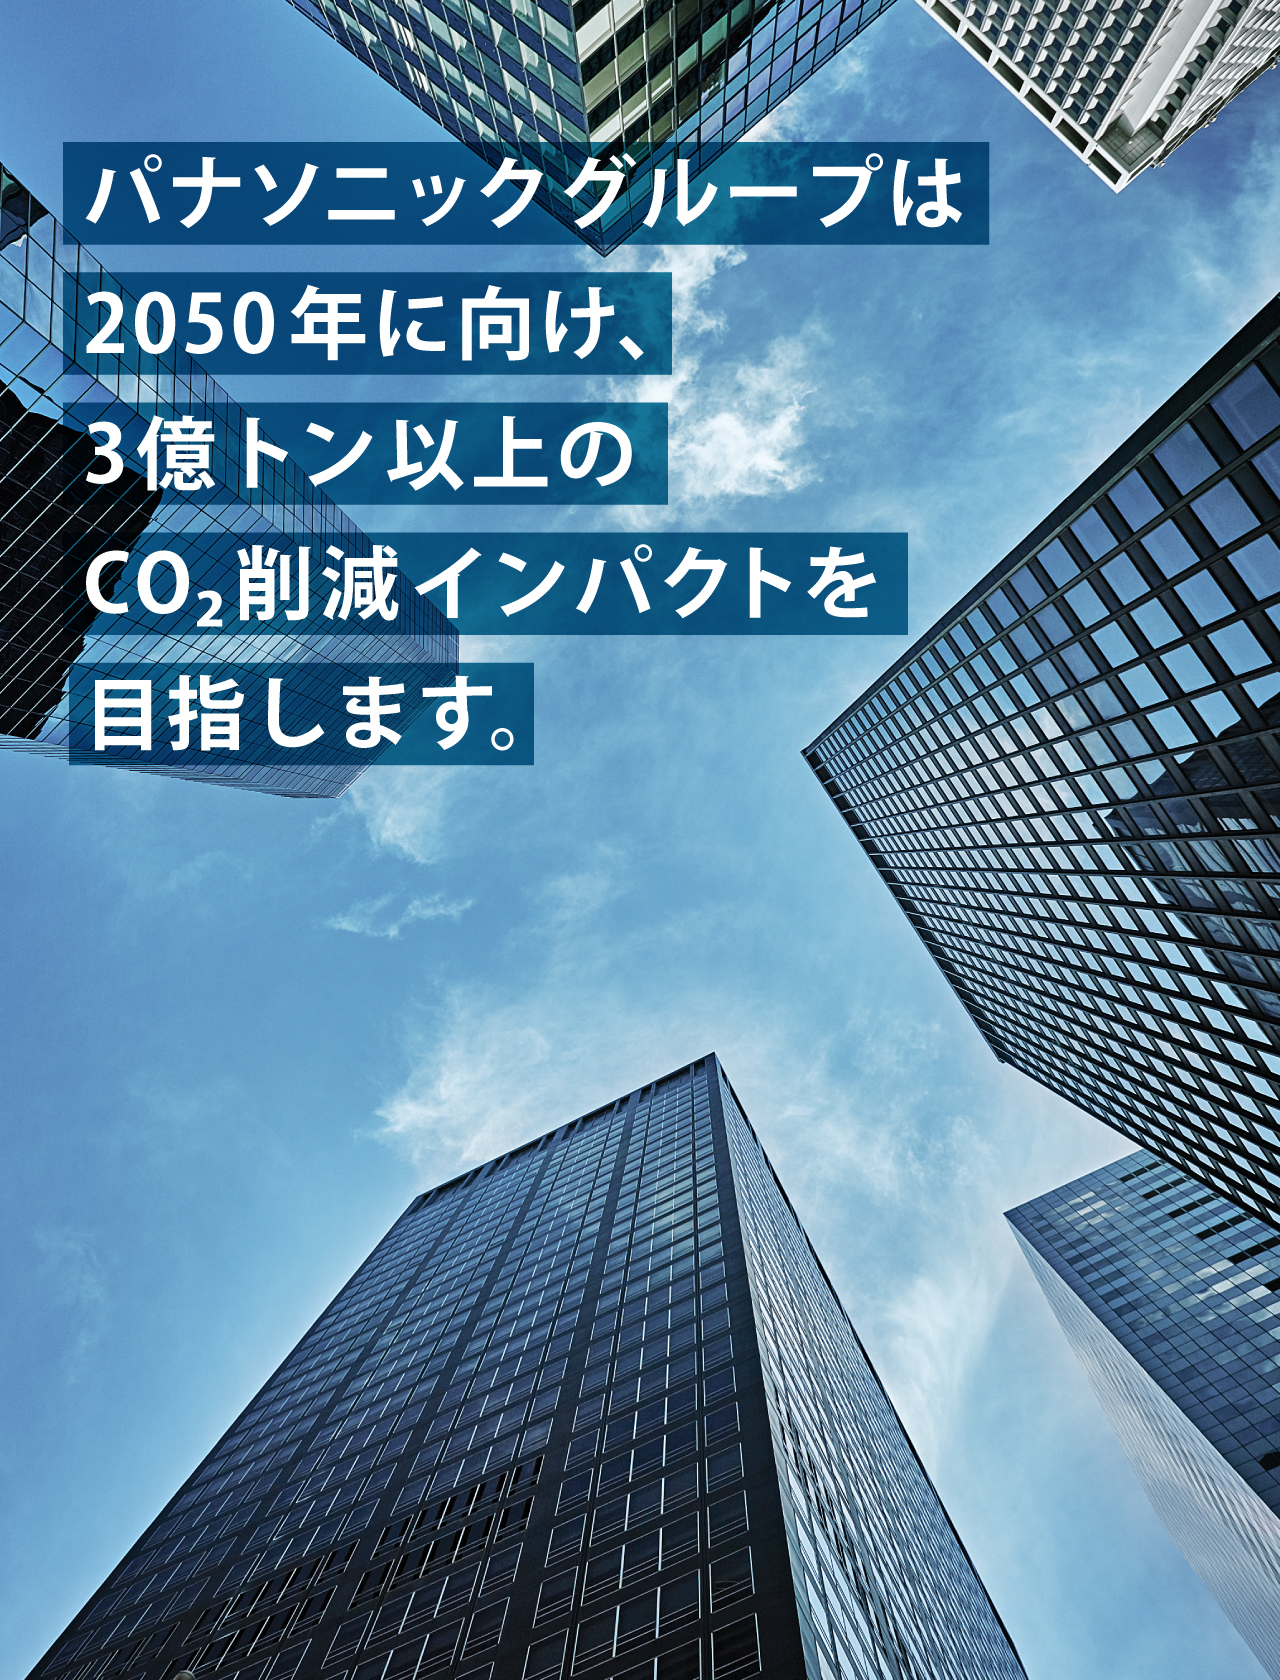 パナソニックグループは2050年に向け、3億トン以上のCO2削減インパクトを目指します。背景写真：下から見上げた高層ビルと青空。